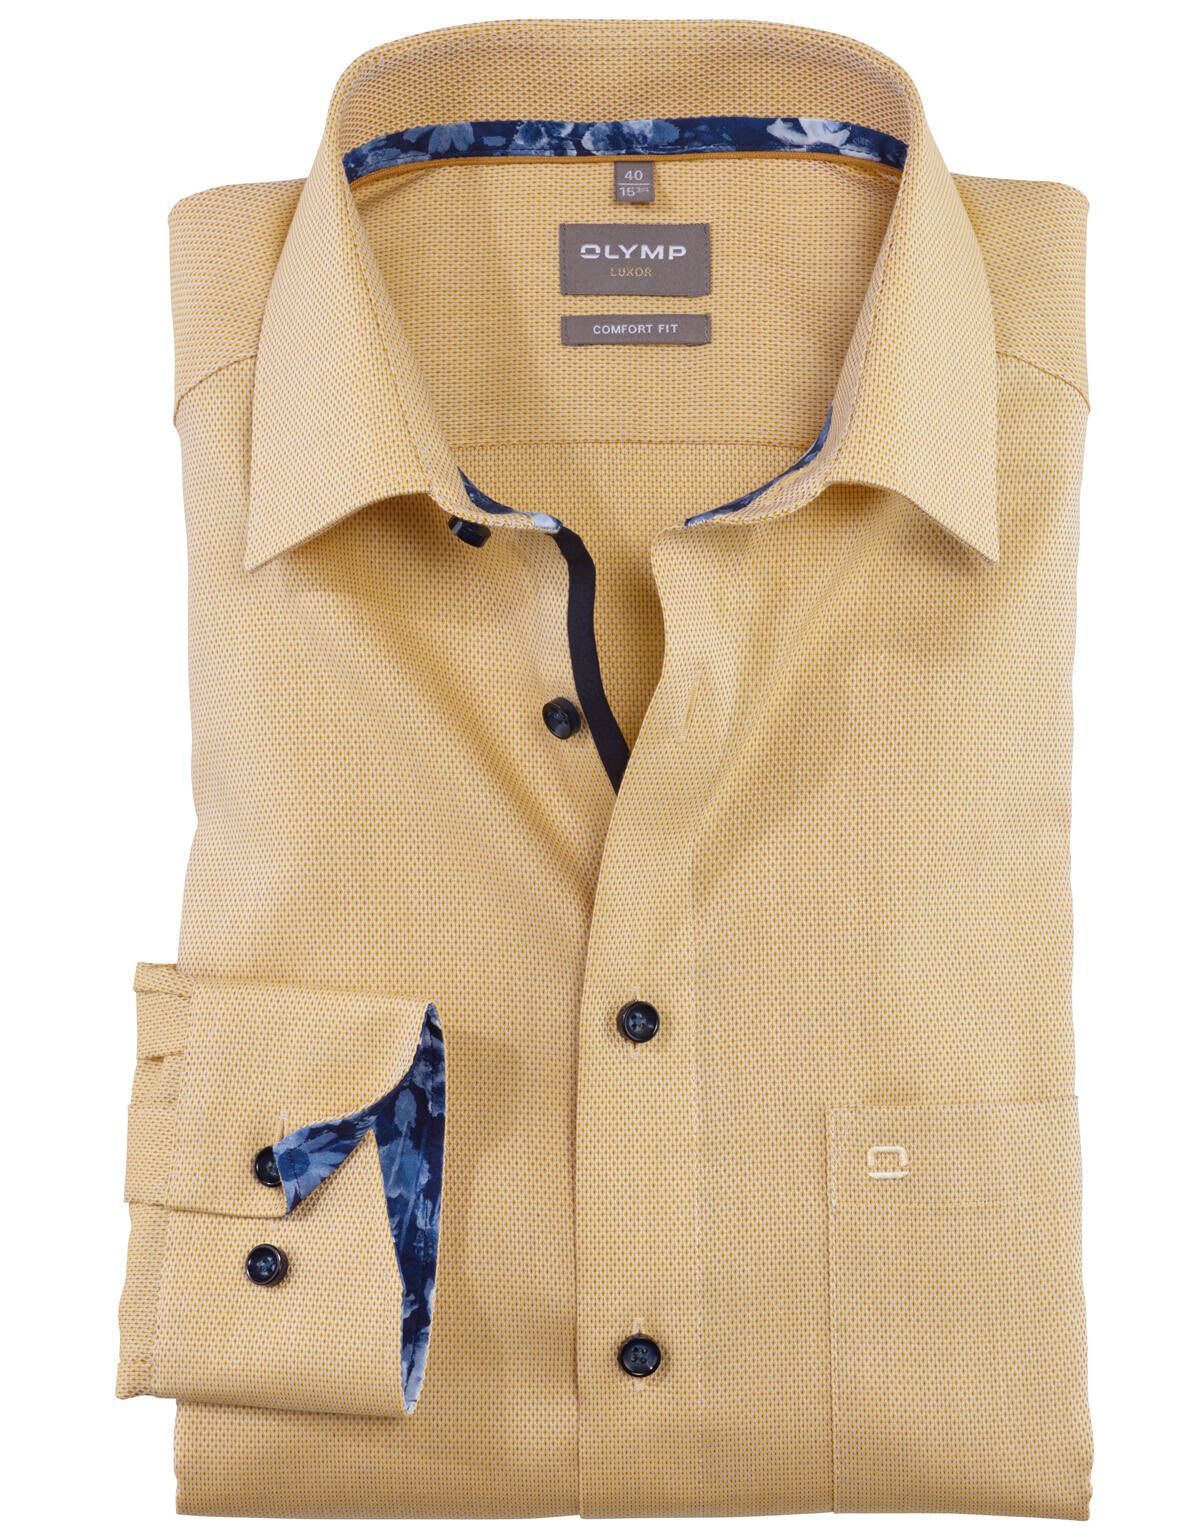 Рубашка классическая мужская OLYMP Luxor, прямая[ЖЁЛТЫЙ]